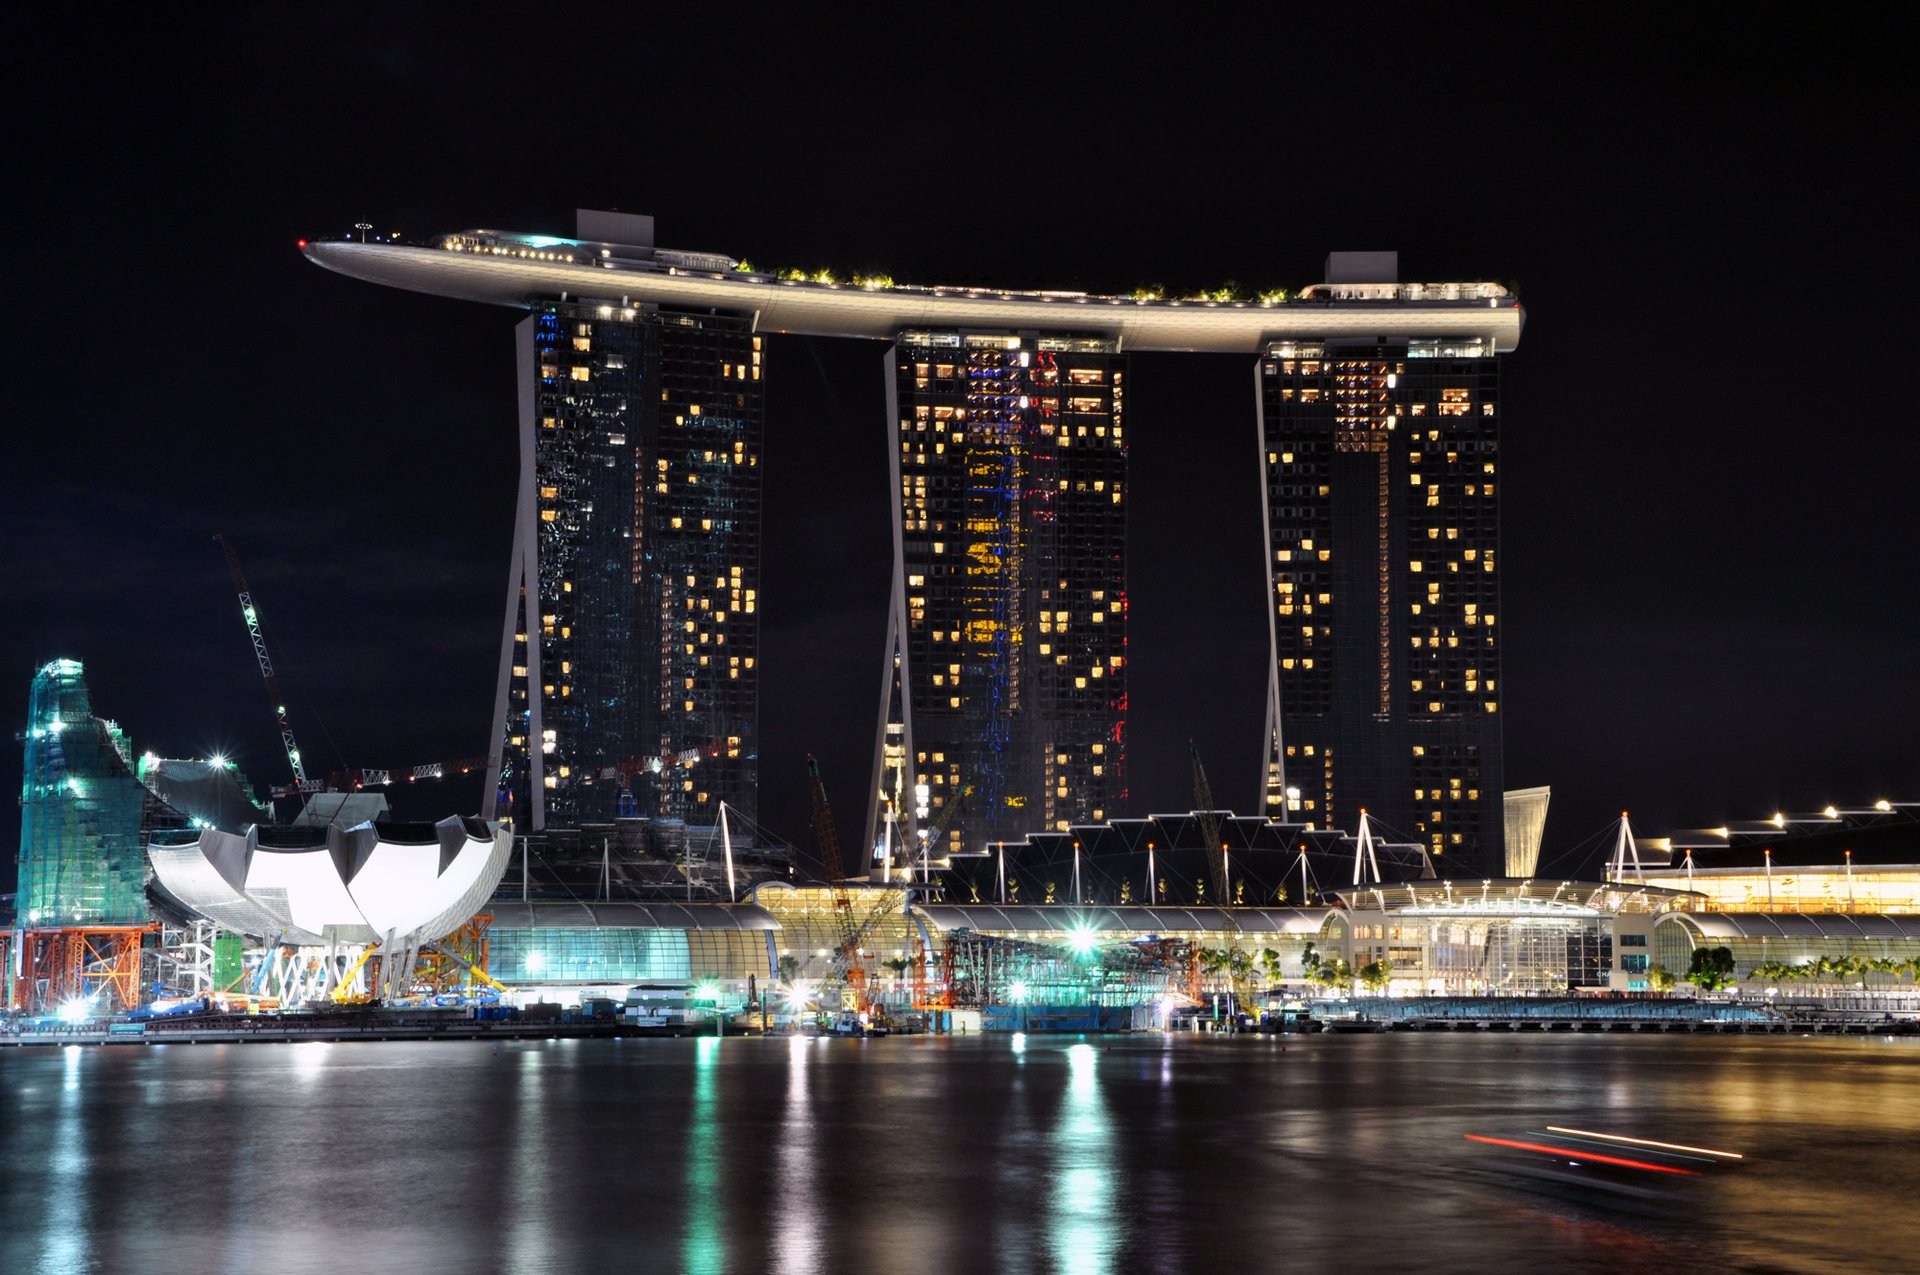 singapur stadt meer nacht lichter hotel dock